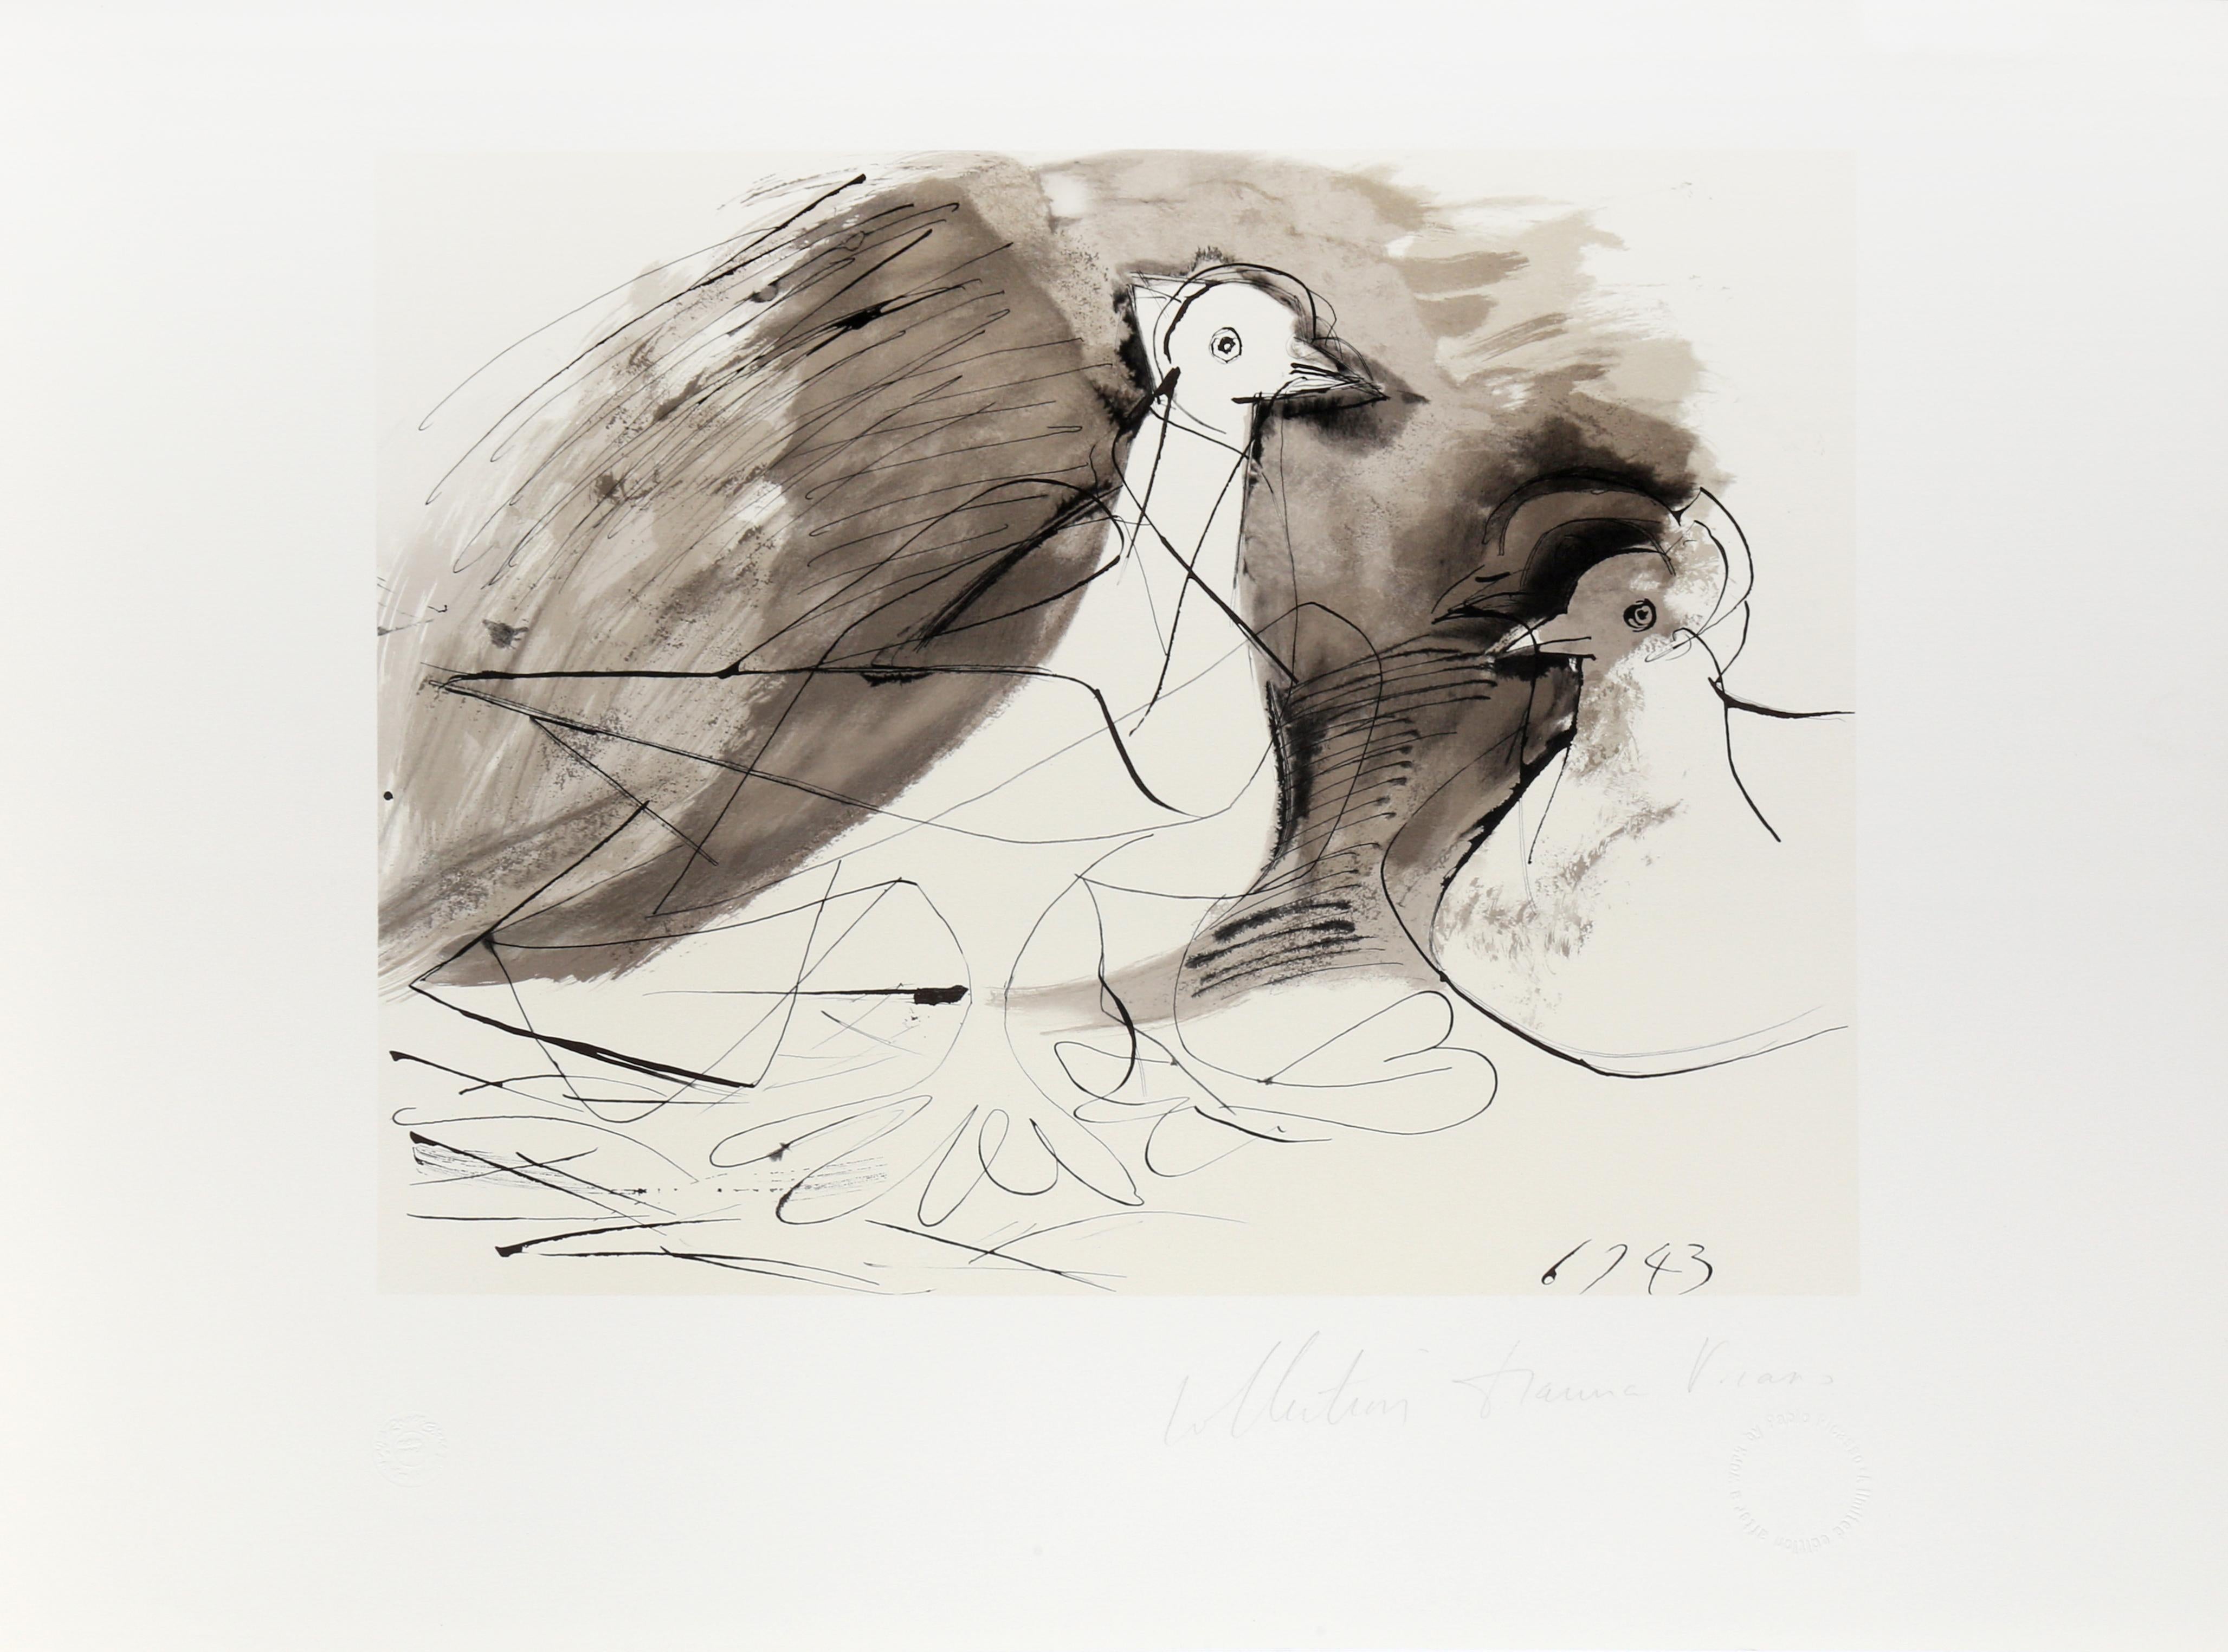 Bien qu'elle ne comporte que quelques lignes et ombres, la représentation cubiste de Pablo Picasso de deux pigeons est expressive et dynamique grâce à l'utilisation d'une perspective abstraite. La représentation fragmentée des oiseaux par l'artiste